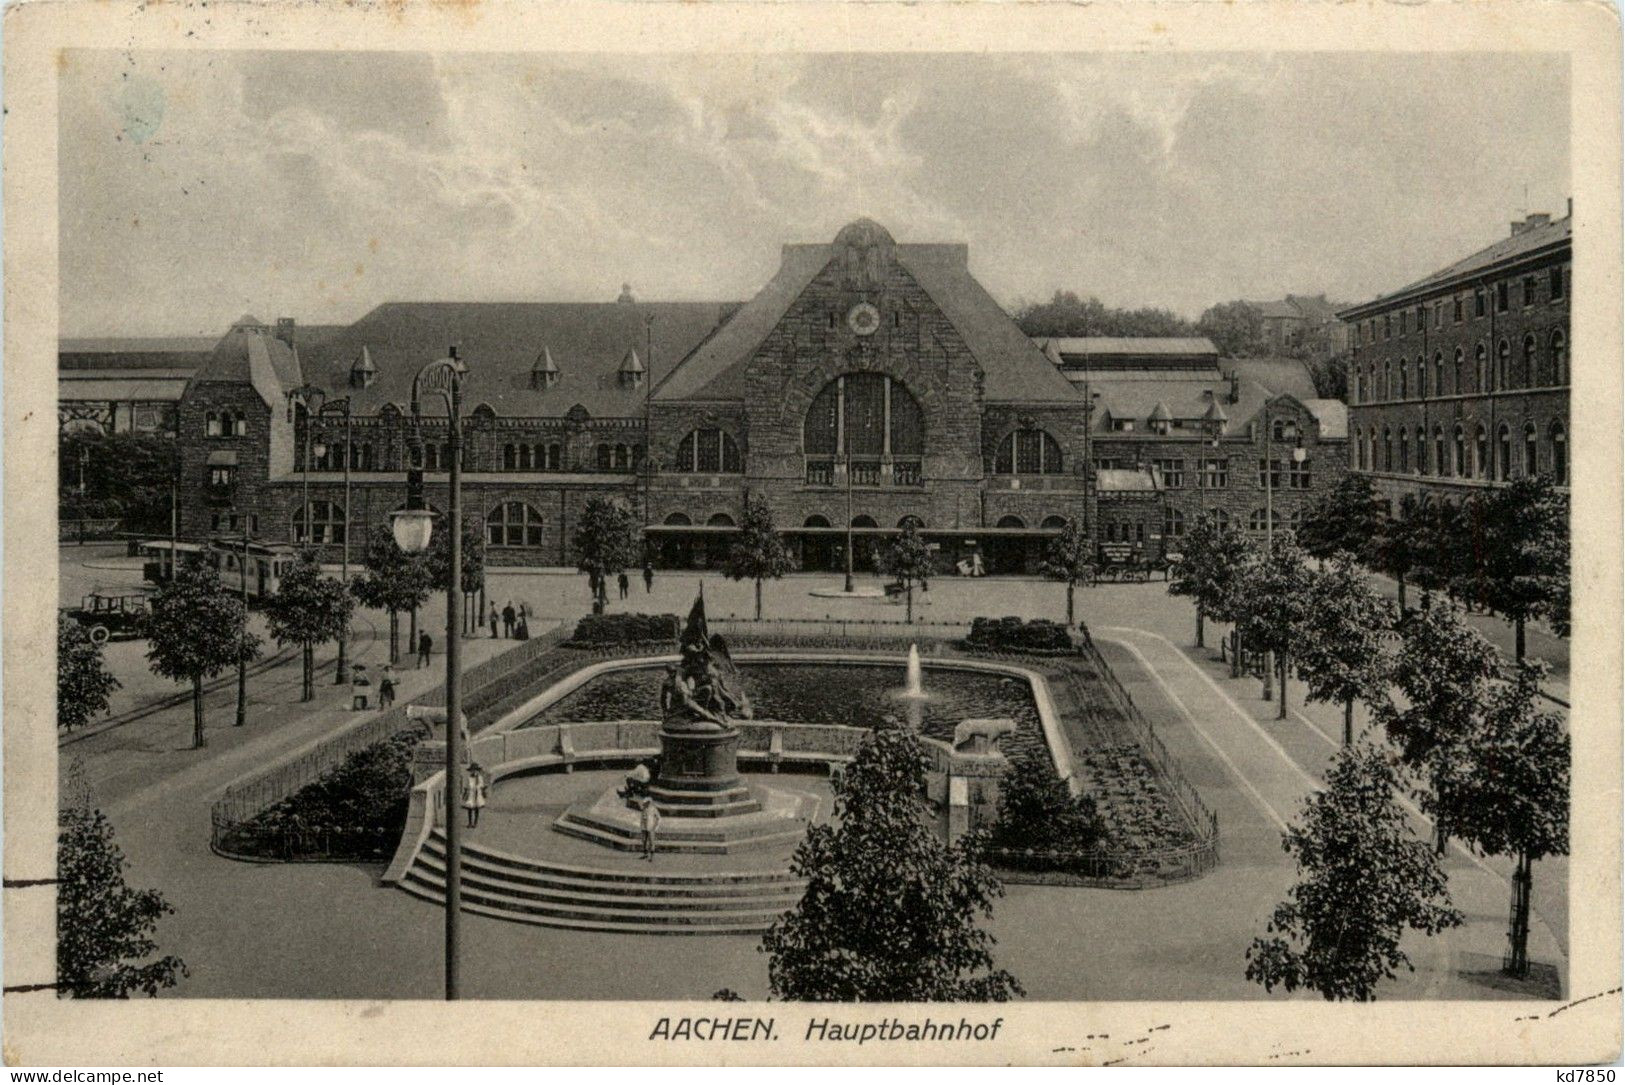 Aachen - Hauptbahnhof - Aken